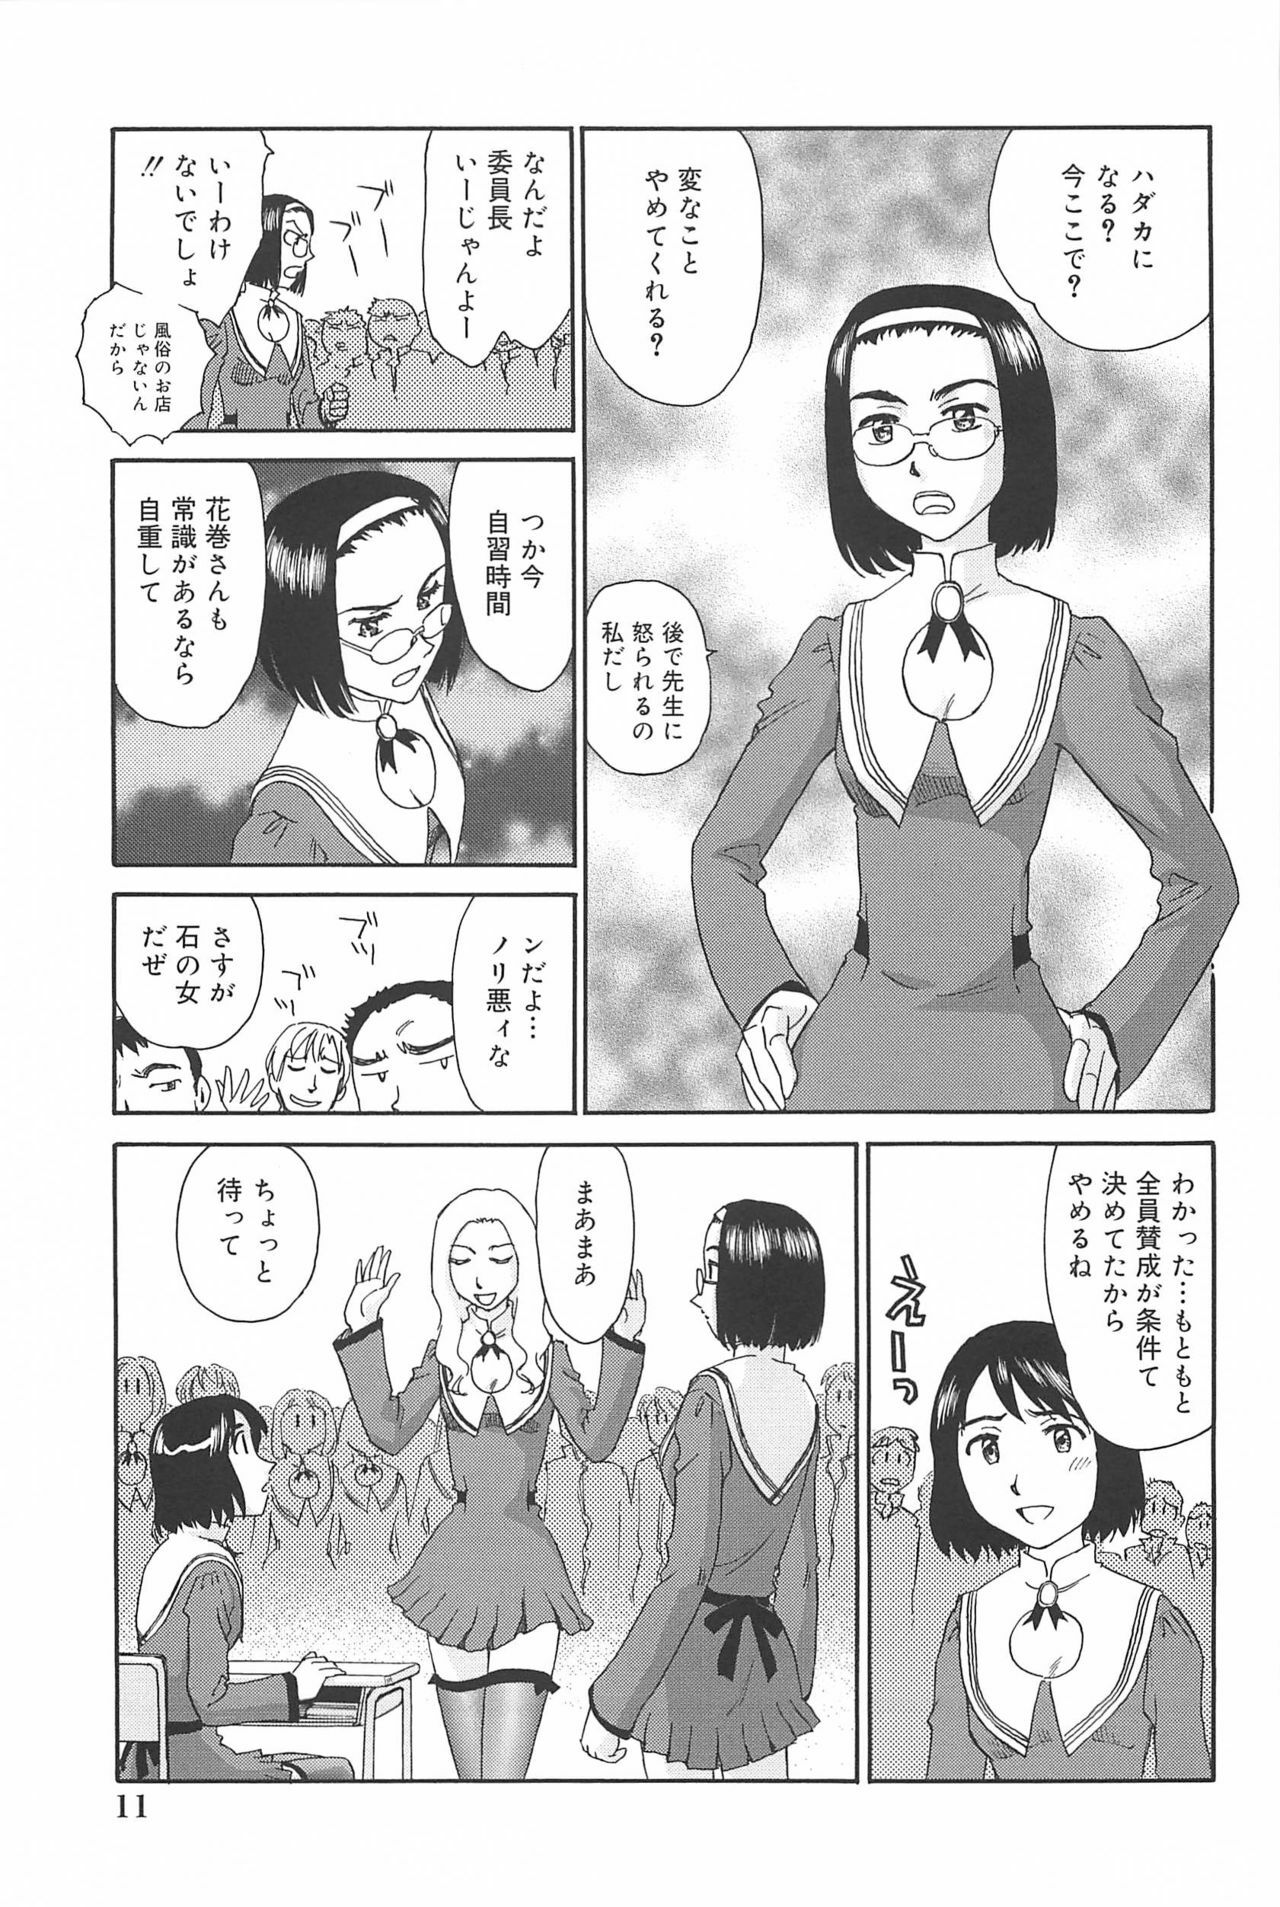 [Suehirogari] Kumo no Michi page 12 full